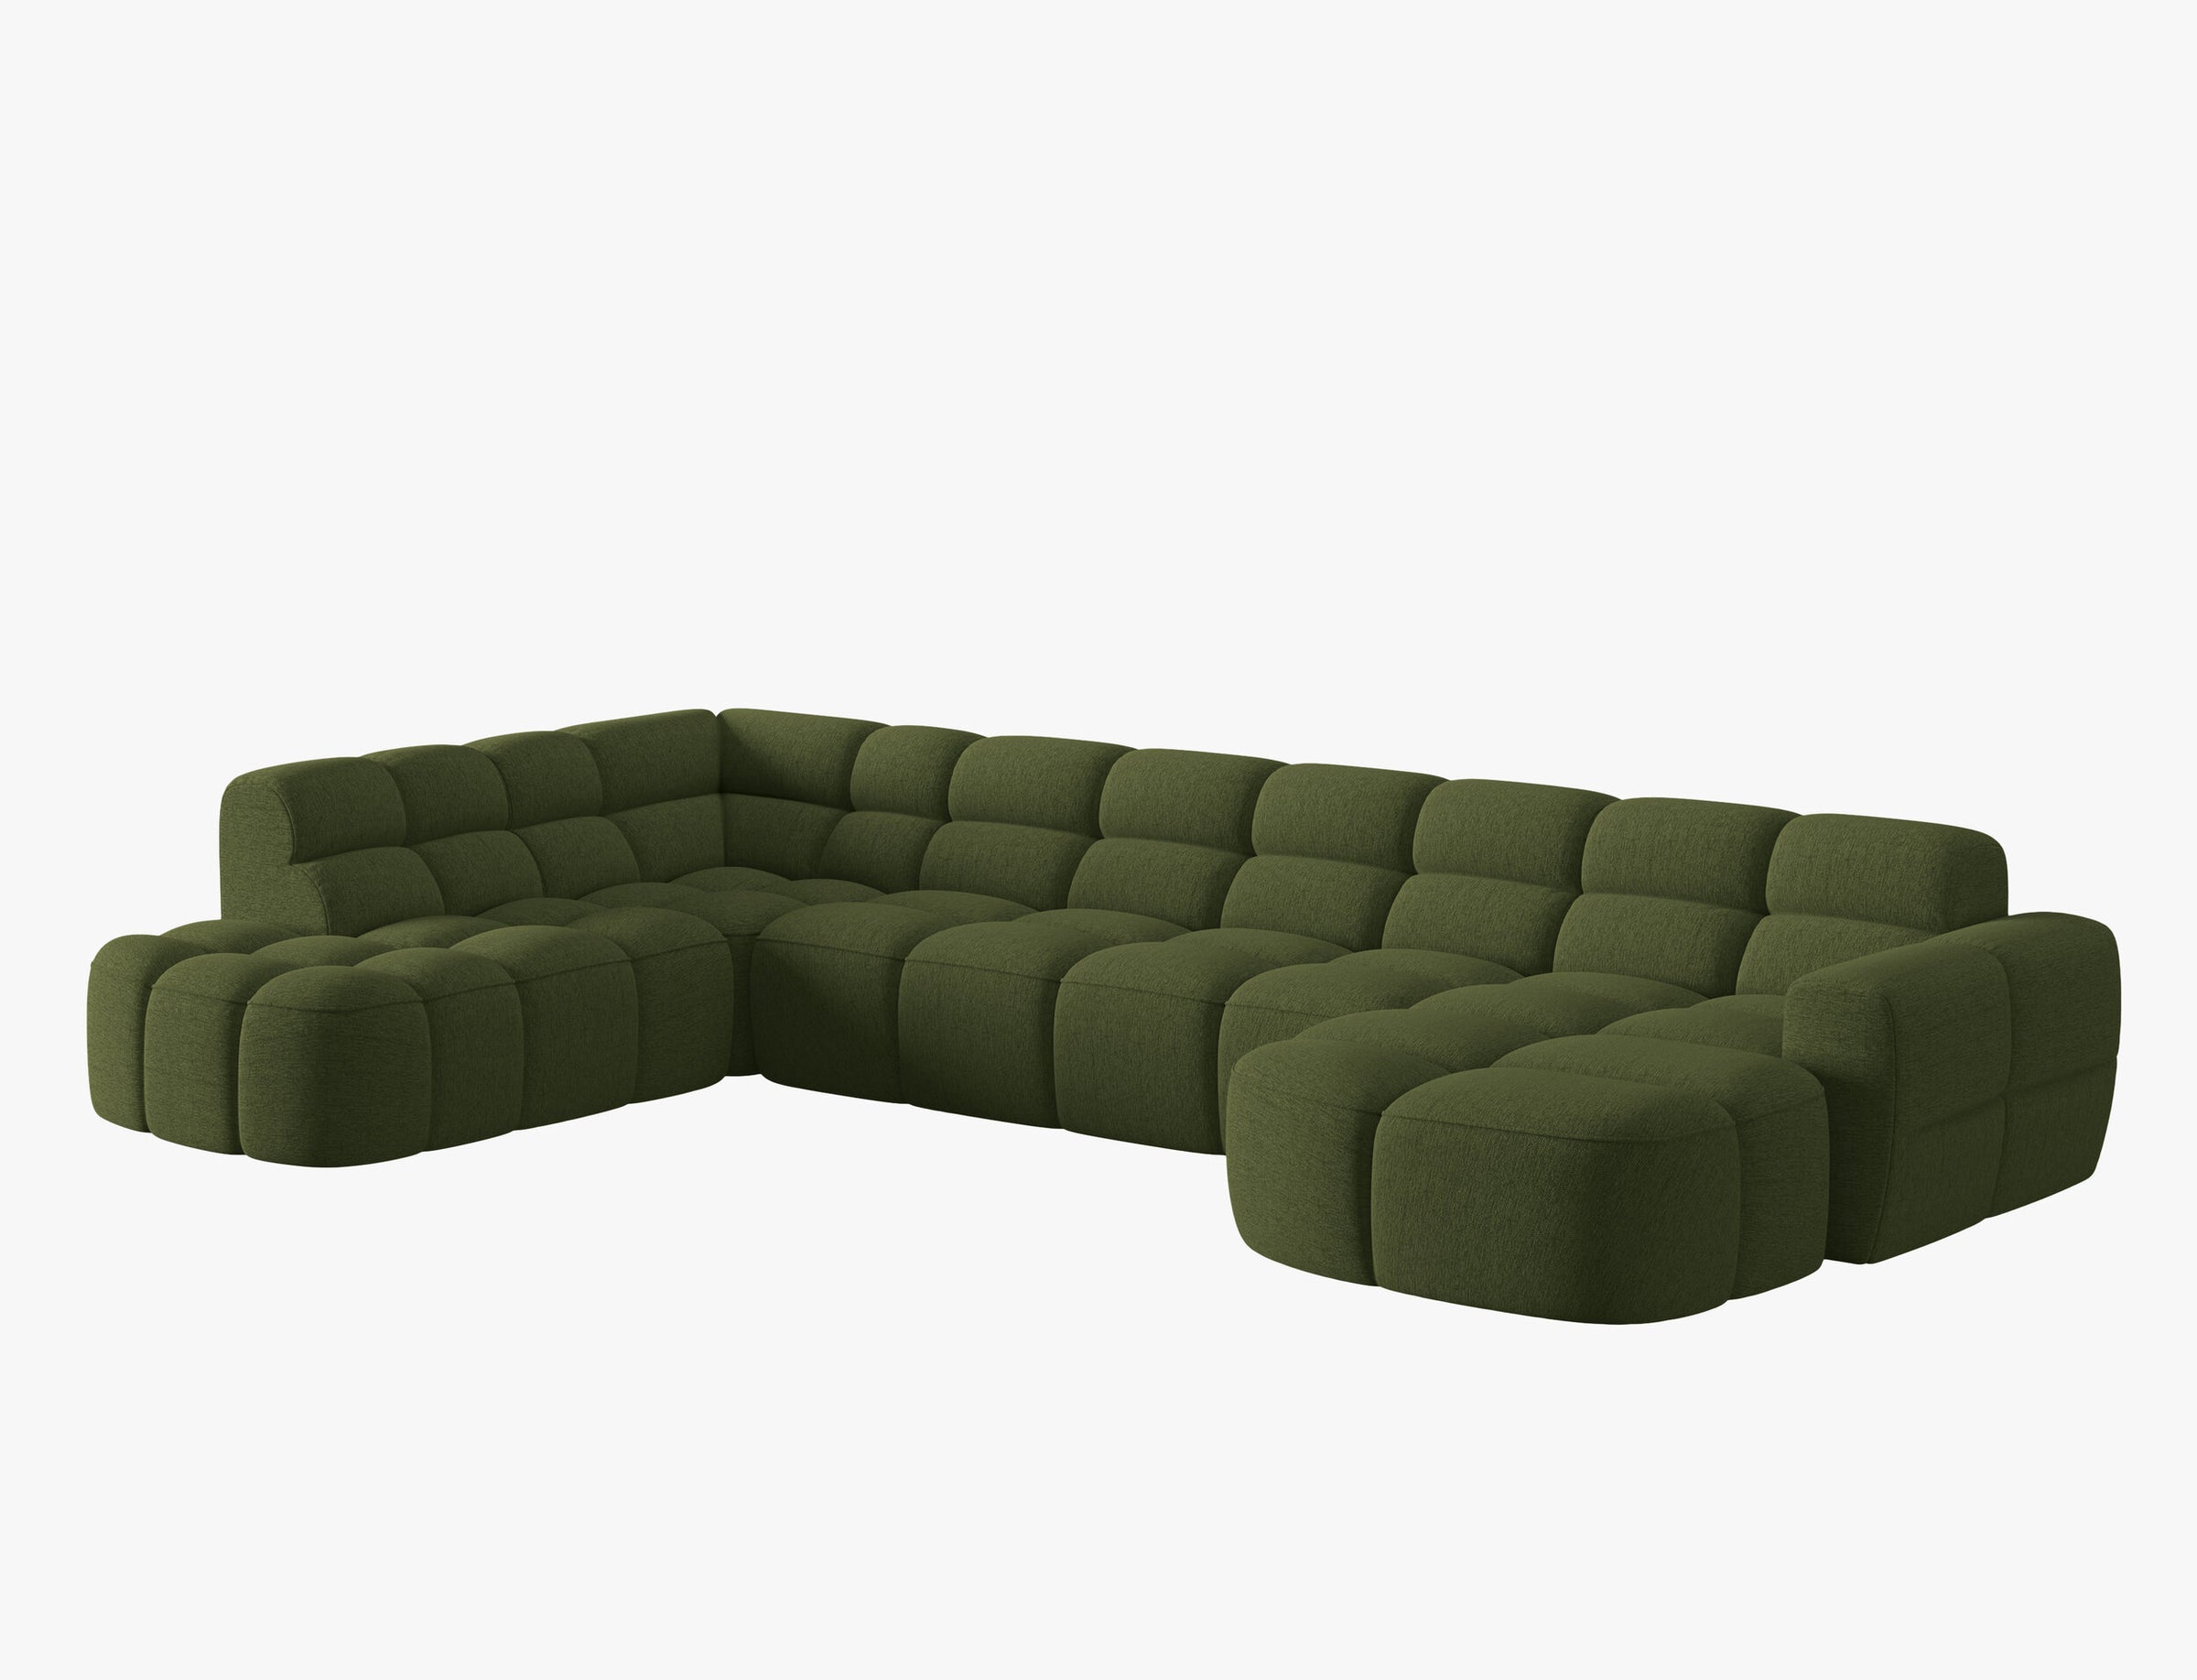 Lisa Structured fabric (Sor35) / Green melange 1